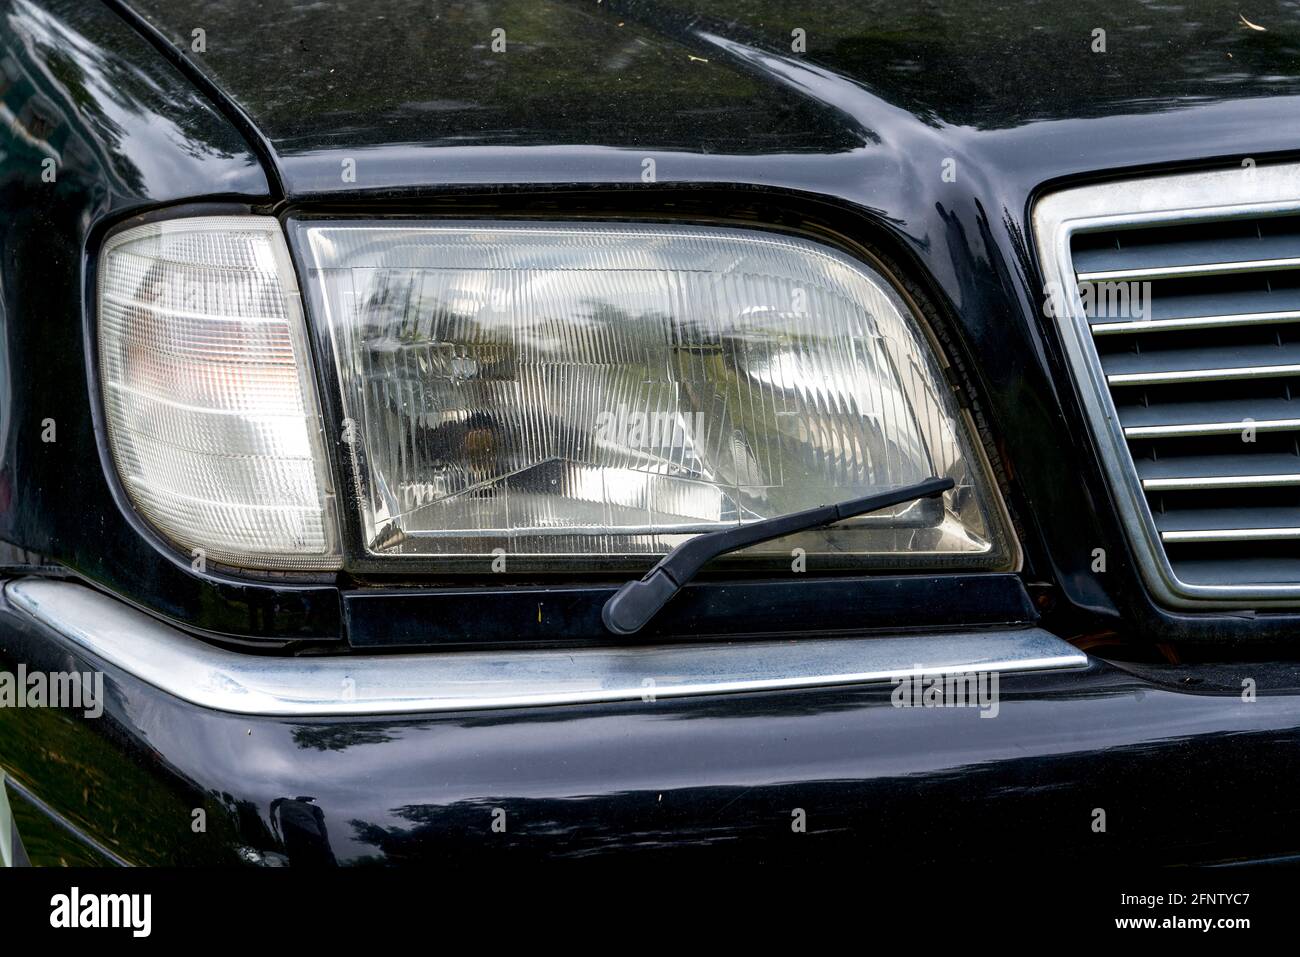 Nahaufnahme der Scheinwerfer mit Scheibenwischern von alten Autos  Stockfotografie - Alamy